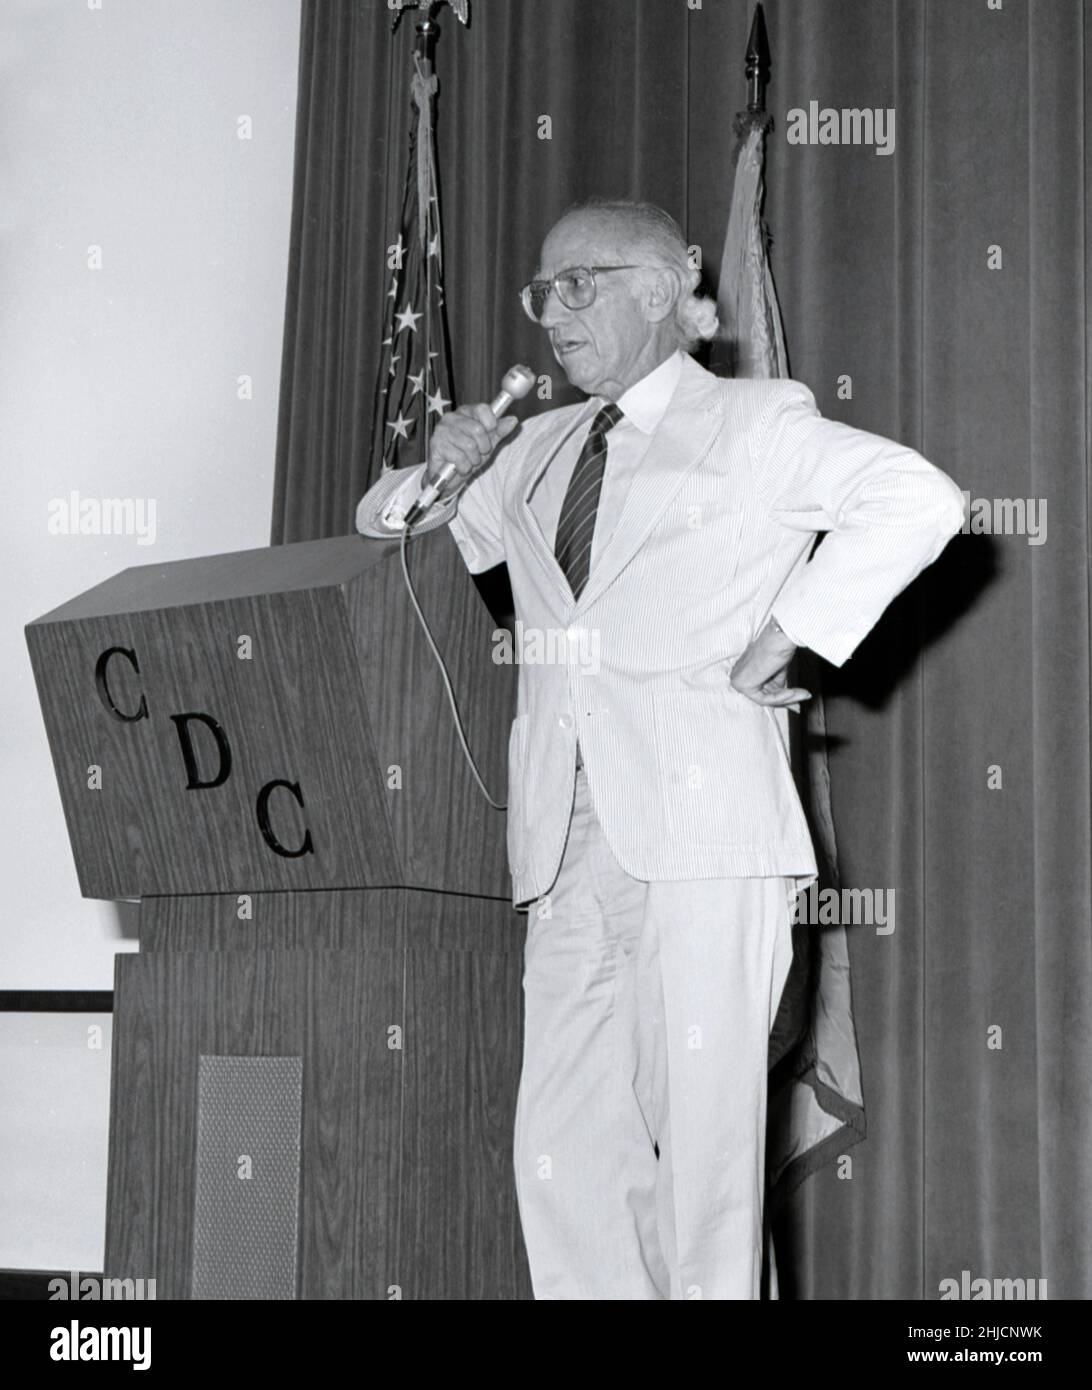 Questa fotografia mostra il Dr. Jonas Salk (a sinistra), creatore del primo vaccino antipolio nel 1955, durante la sua presentazione al CDC nel 1988. Il 12 aprile 2005, segna il 50th° anniversario dell'annuncio che il vaccino antipolio, sviluppato da Jonas Salk e dal suo team di scienziati presso l'Università di Pittsburgh, ha lavorato. "Sicuro, efficace e potente" erano le parole usate per annunciare al mondo che era stato trovato un vaccino efficace contro una malattia che una volta paralizzava 13.000--20.000 persone ogni anno negli Stati Uniti. 1988 / xxxxxxxxxx Image storage: Xxxxxxxxxxxxx CD 112 DH/ 041 http://www.cdc. Foto Stock